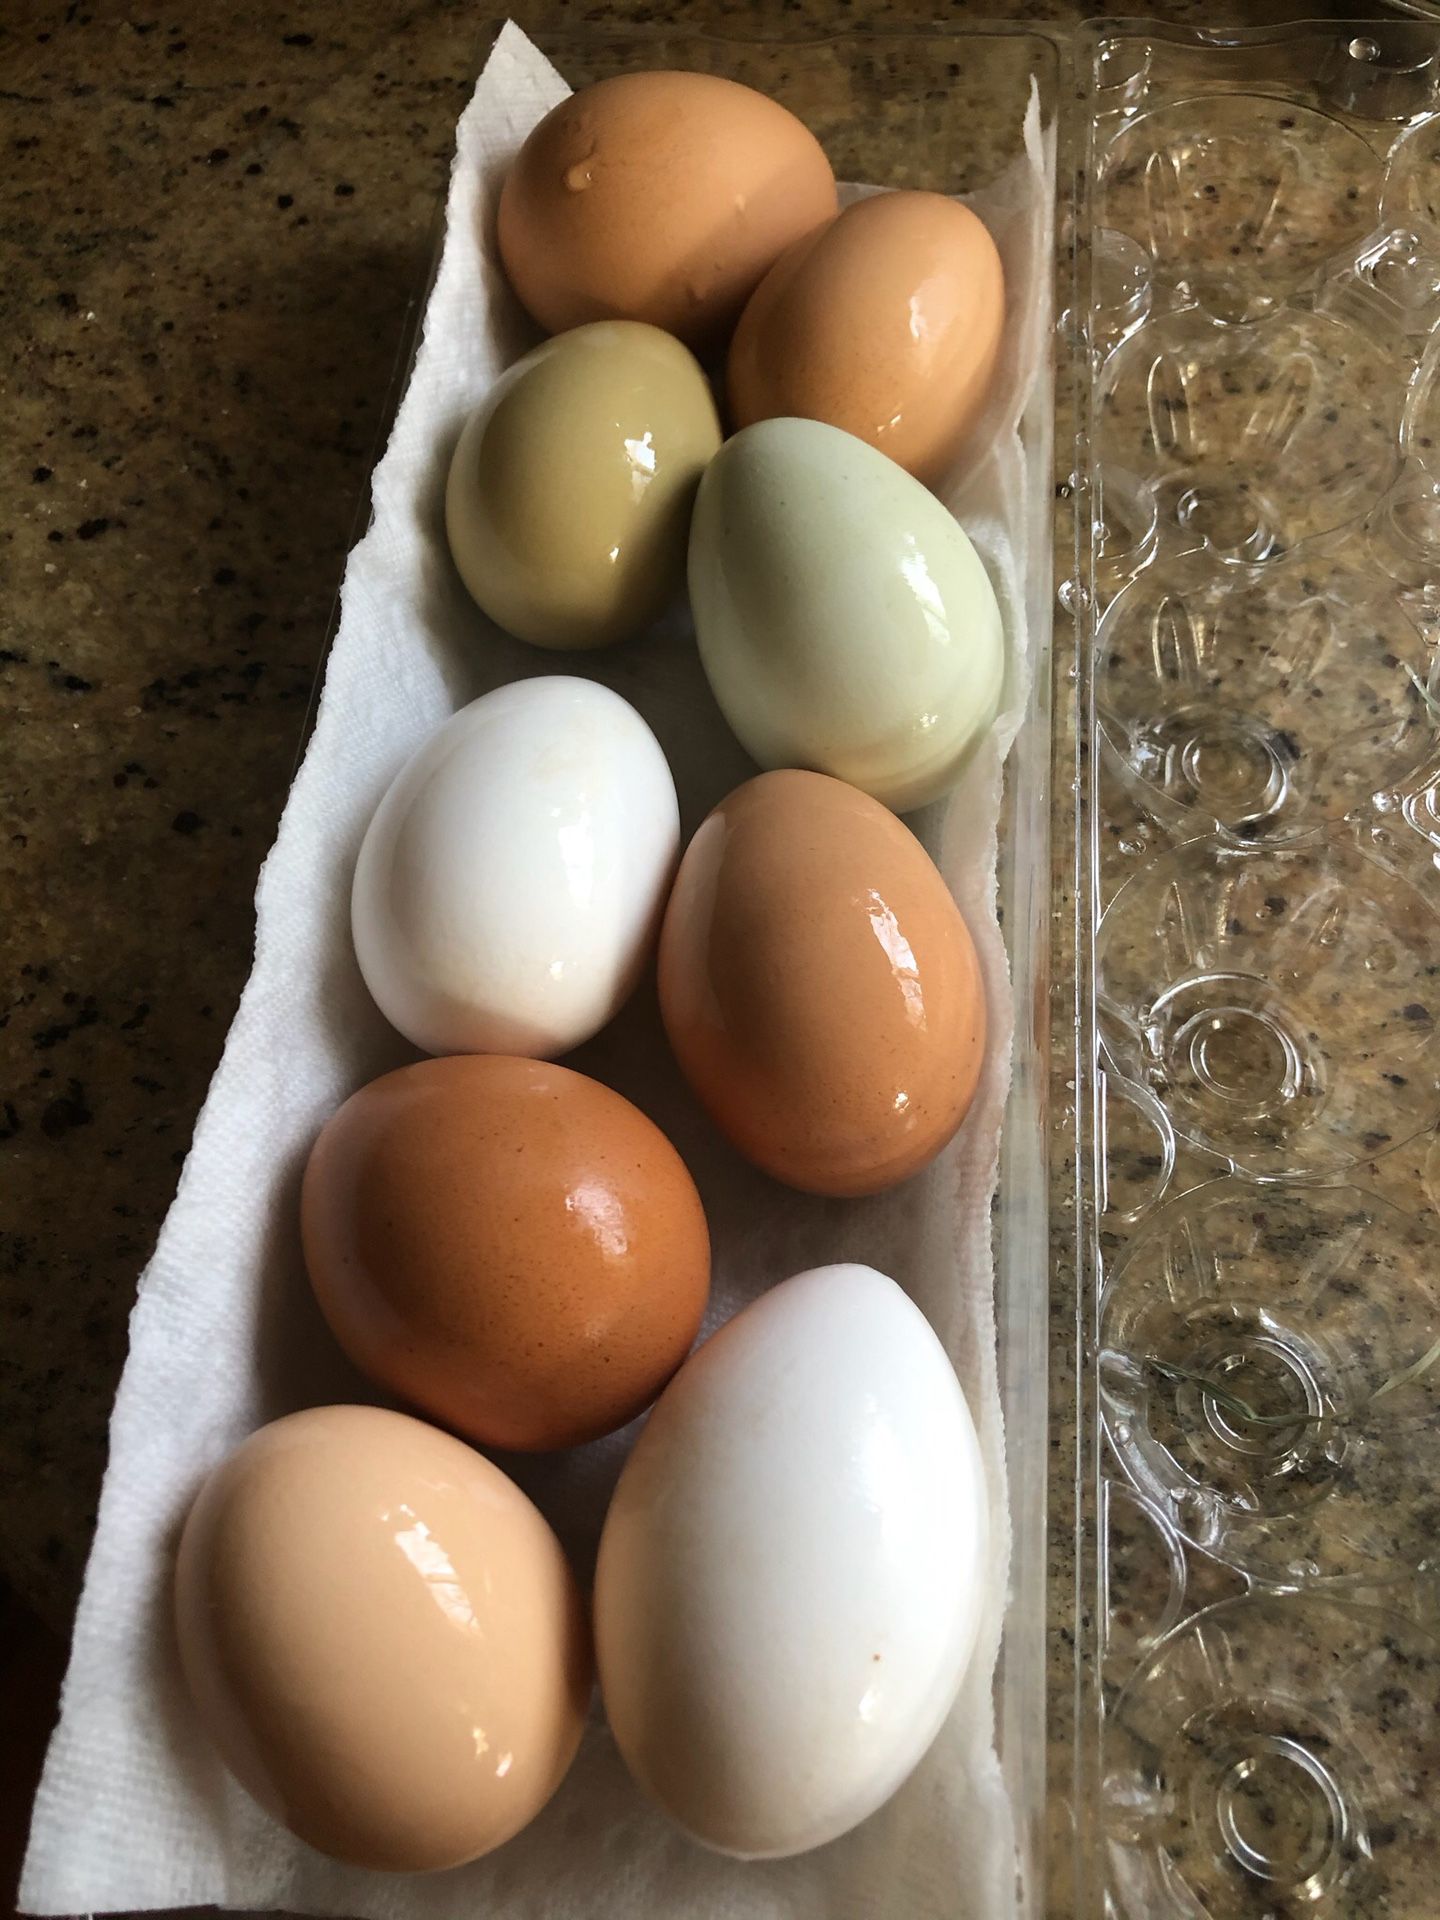 Sparkle Farm : Free Range Duck & Chicken Eggs